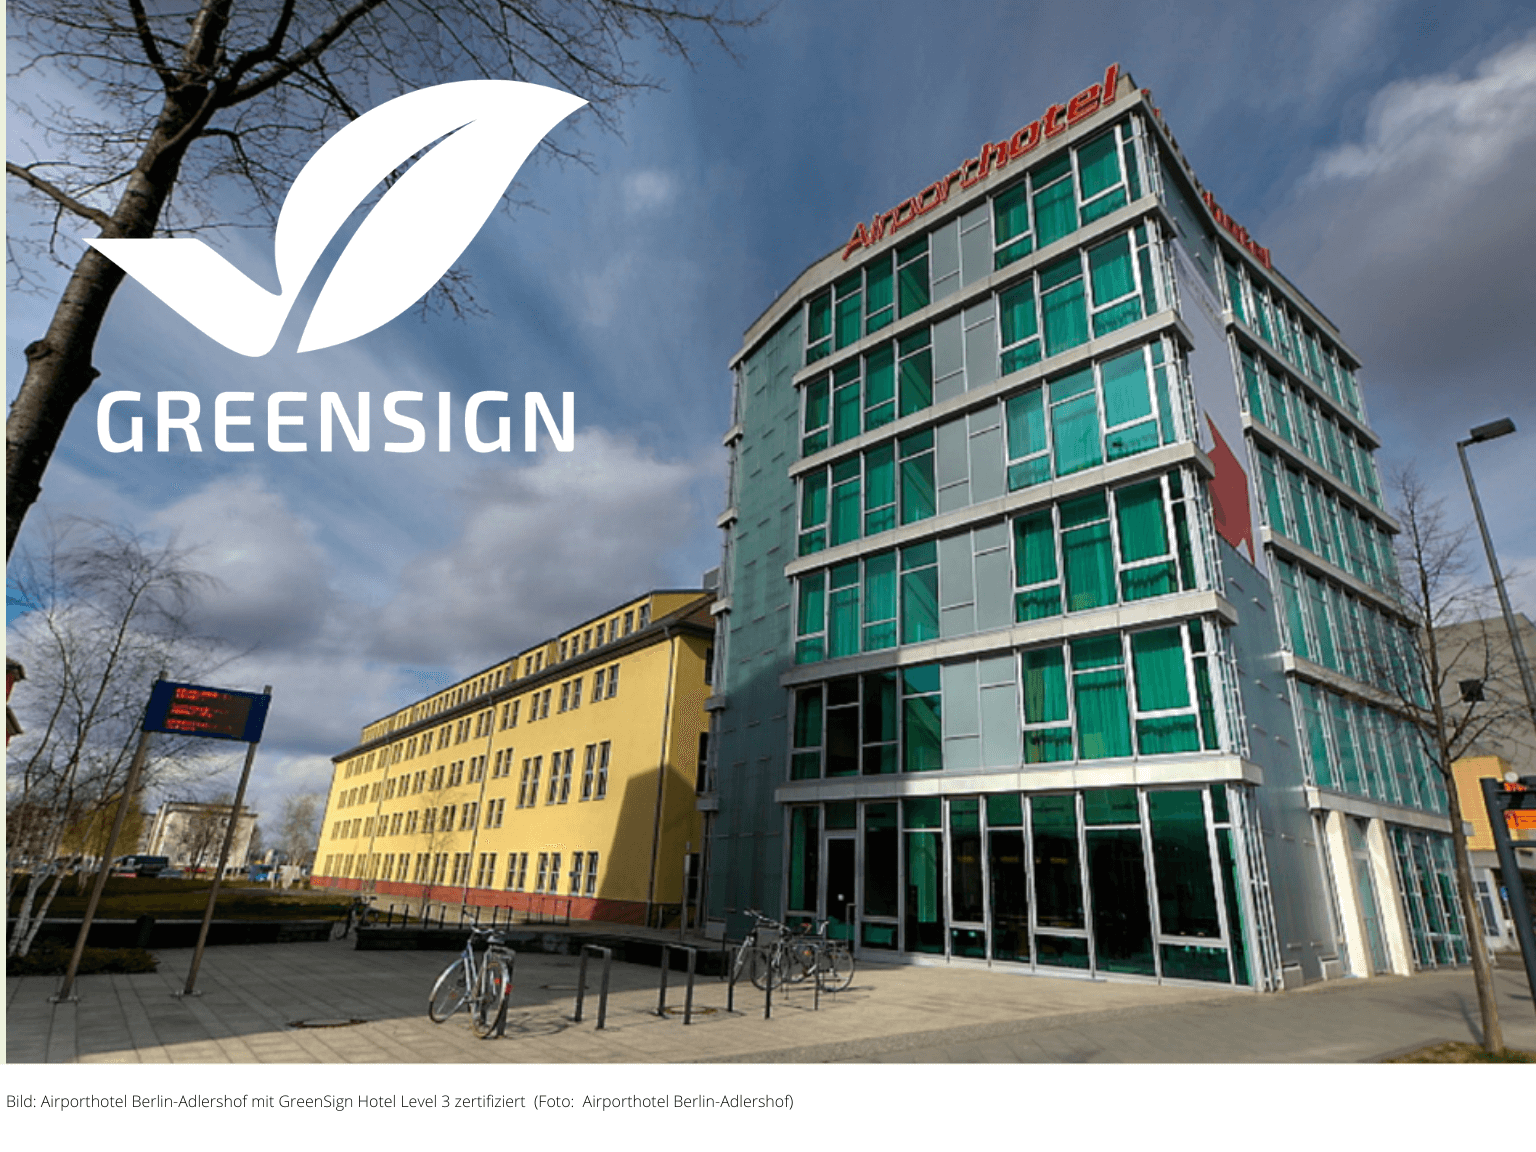 GreenSign Hotel Zertifizierung: Airporthotel Berlin Adlershof erreicht Level 3